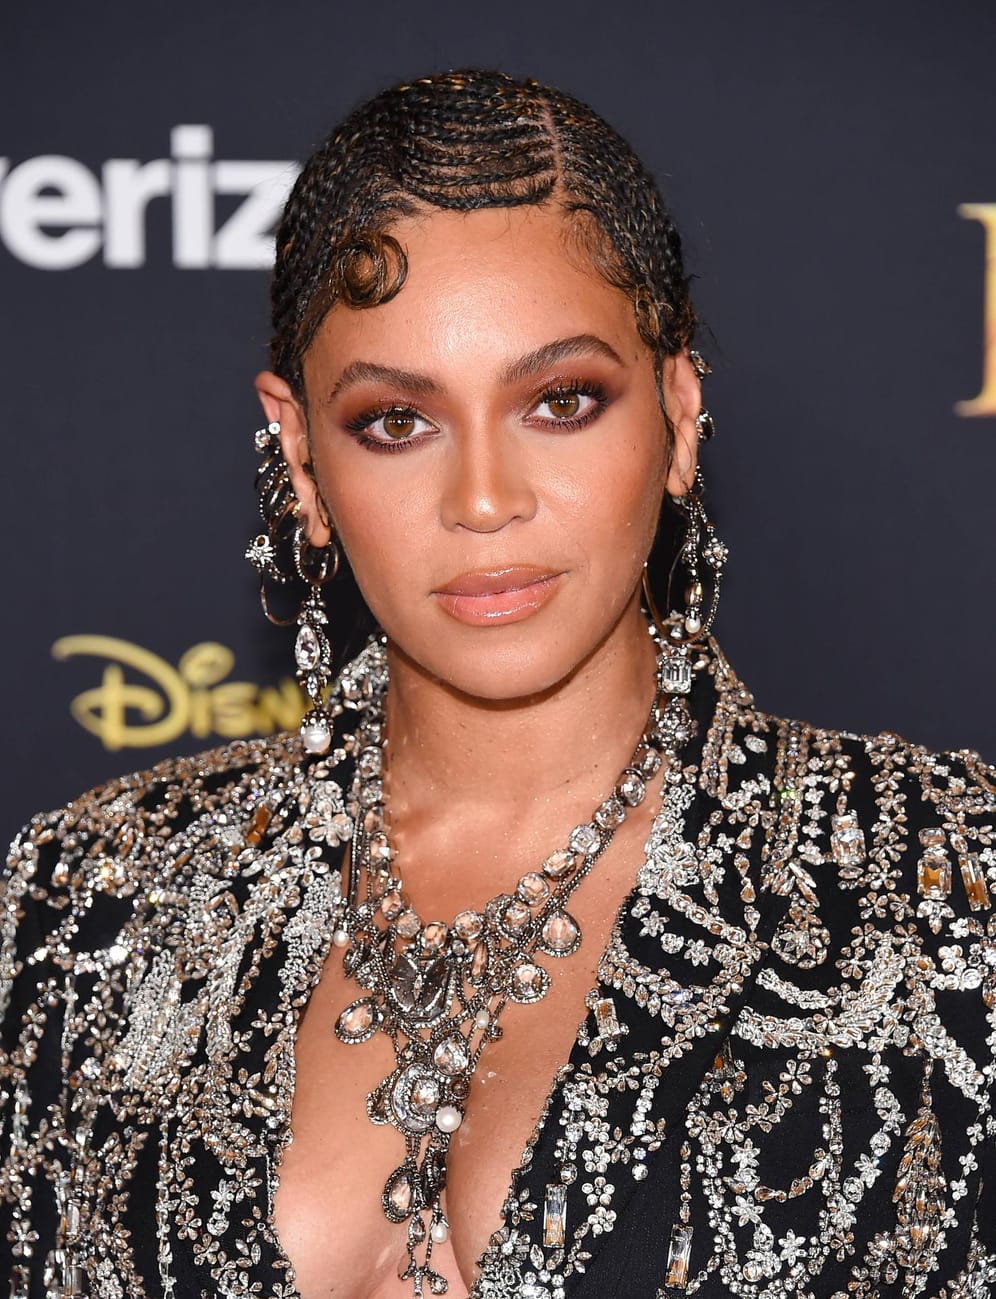 Beyoncé: 2015 zickte sie eine Assistentin auf dem roten Teppich an. Ihre Angestellte zupfte an dem tief ausgeschnittenen Kleid der Sängerin, um sicher zu stellen, dass alles richtig saß. Beyoncé zischte genervt "Stop It!".